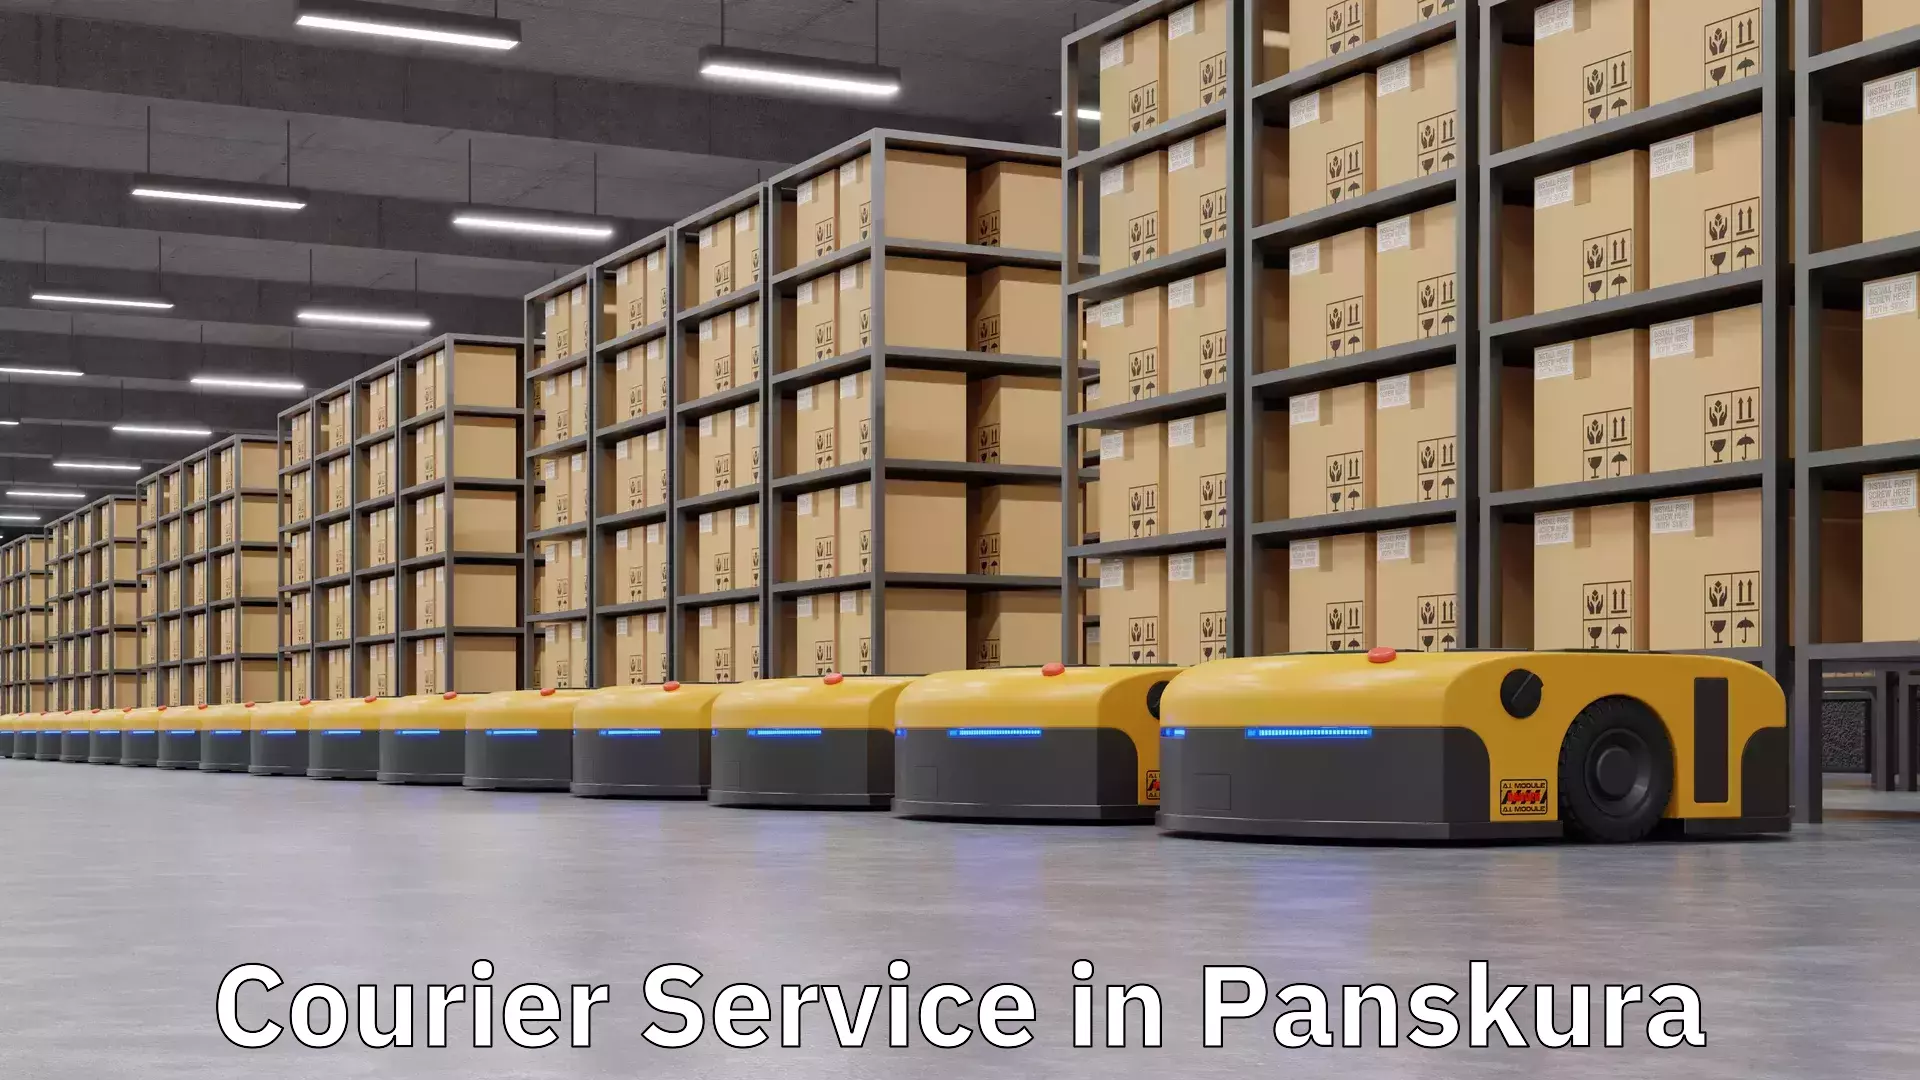 Comprehensive delivery network in Panskura